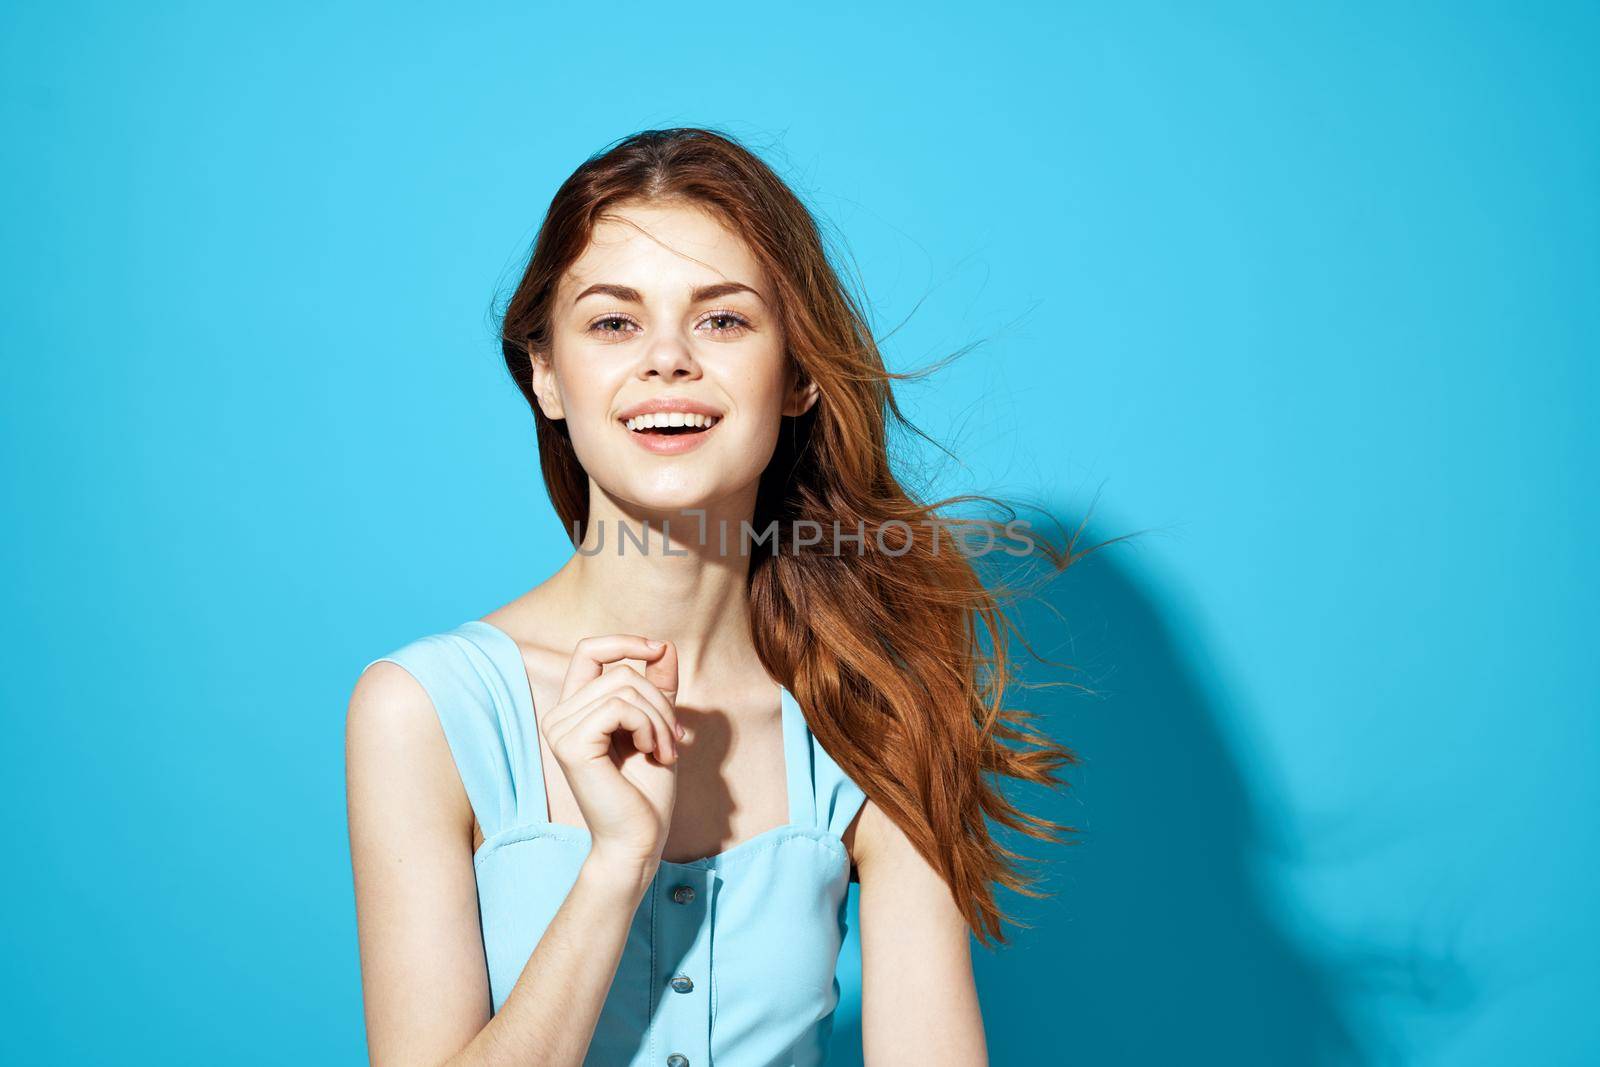 beautiful woman in a blue dress posing Studio fun model by SHOTPRIME